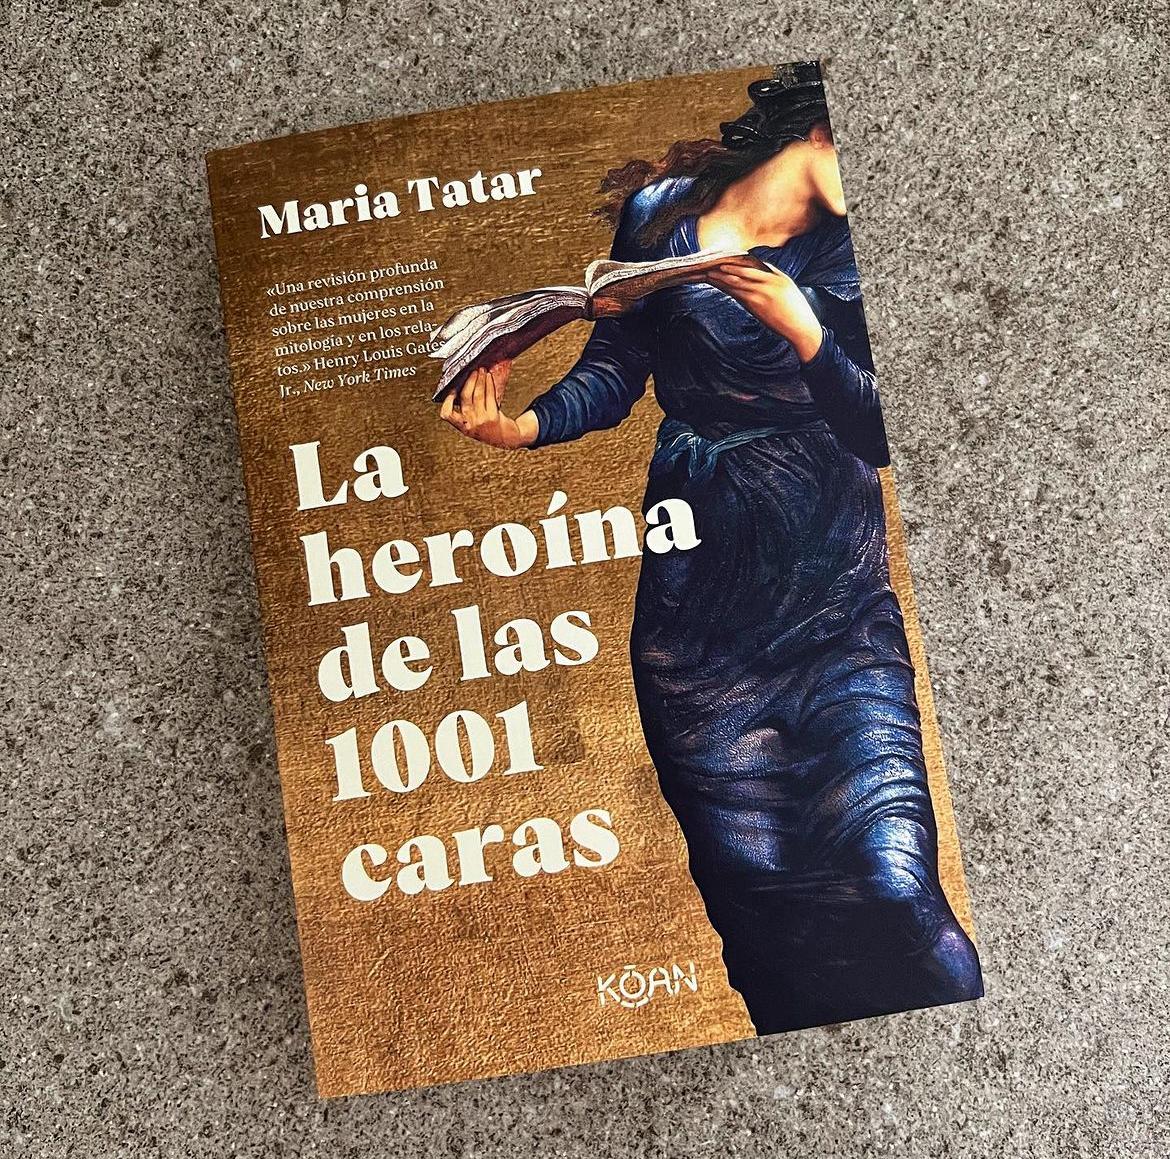 La heroína de las 1001 caras - María Tatar